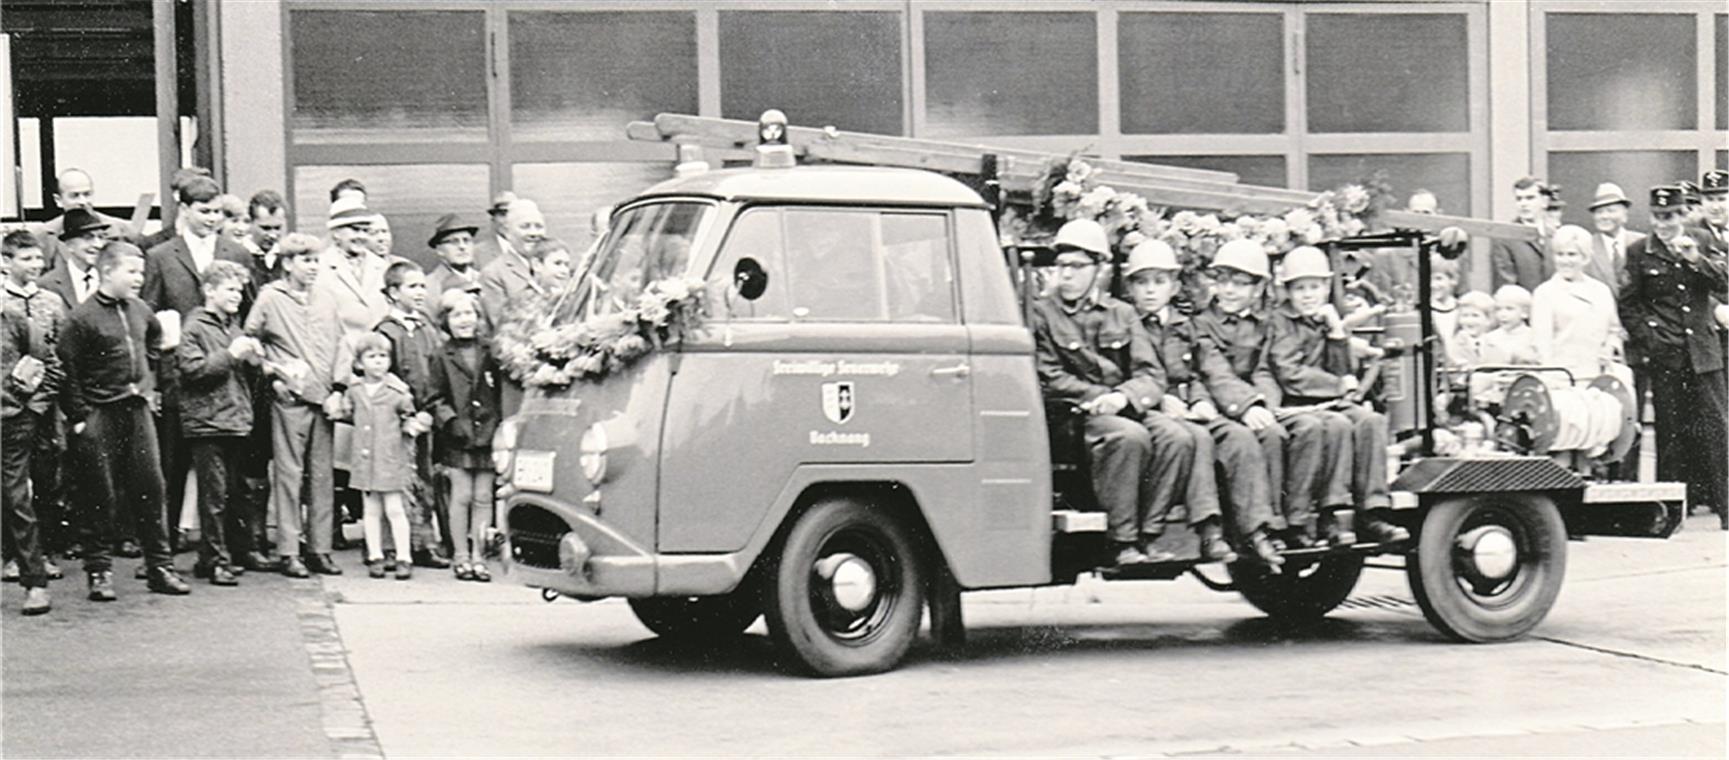 Fahrzeug für die Jugendfeuerwehr 1968 mit sechs Sitzplätzen und einem 280-Liter-Wassertank.